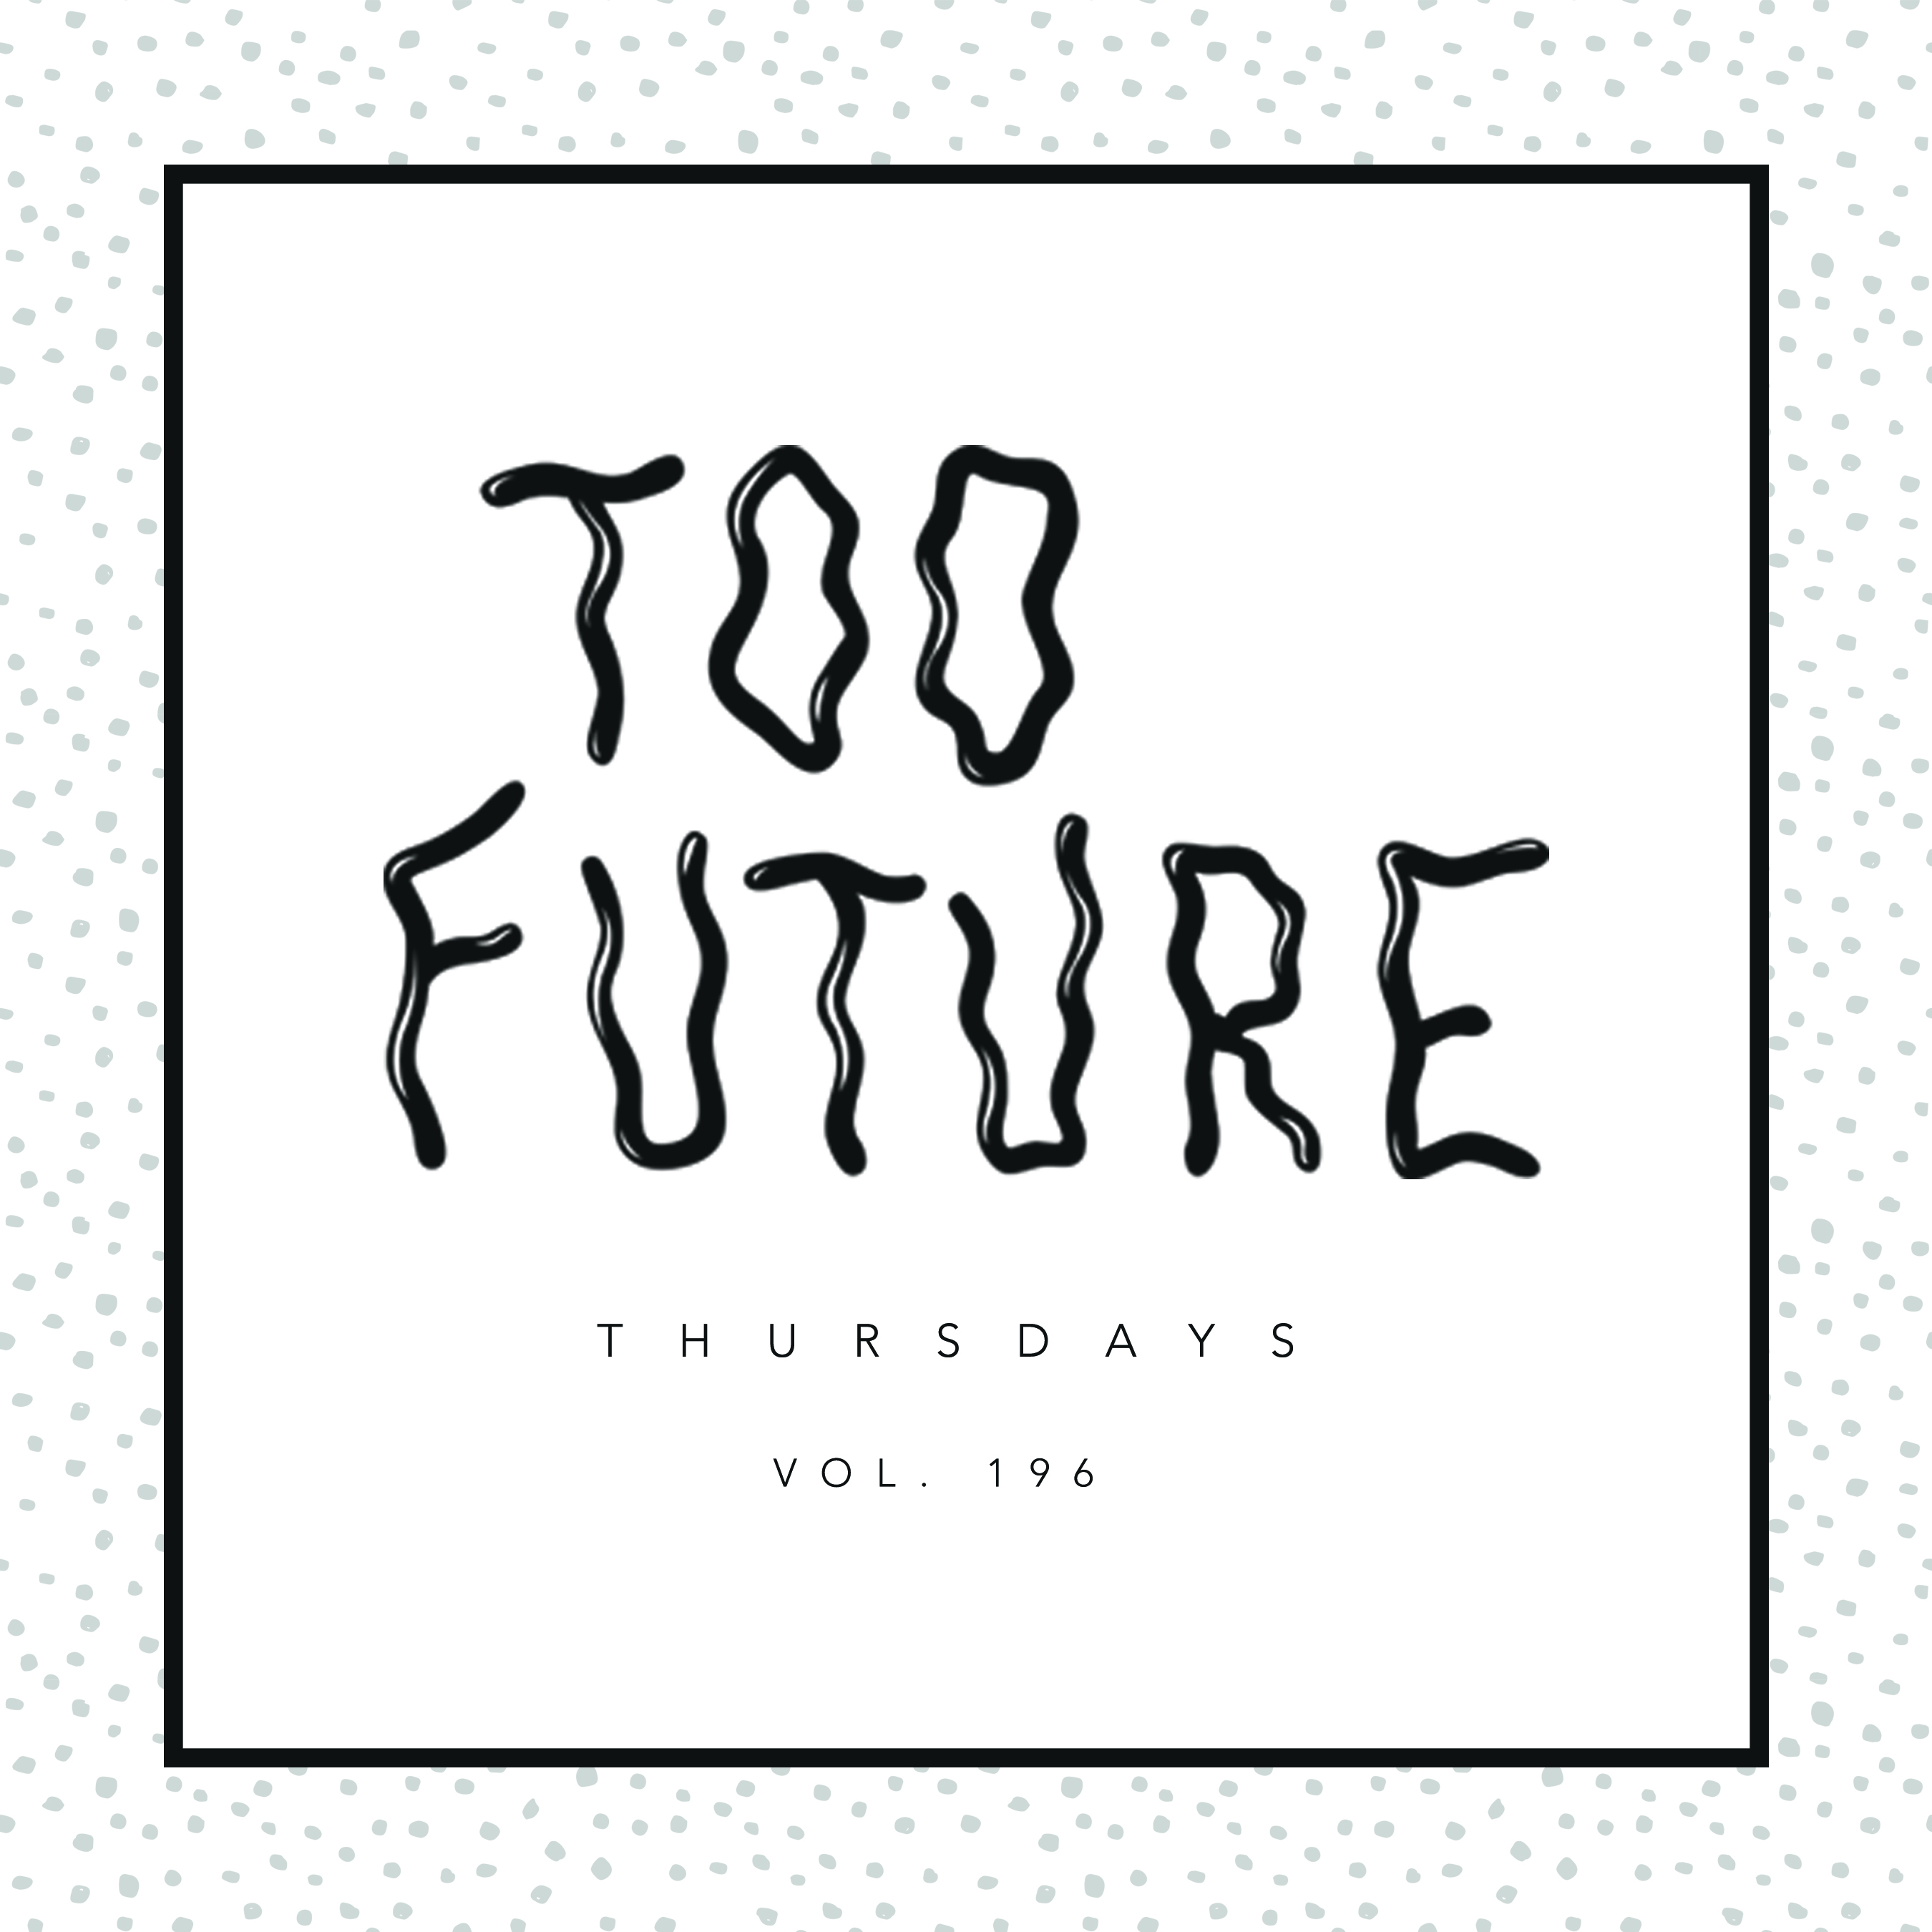 too-future-thursdays-vol-196